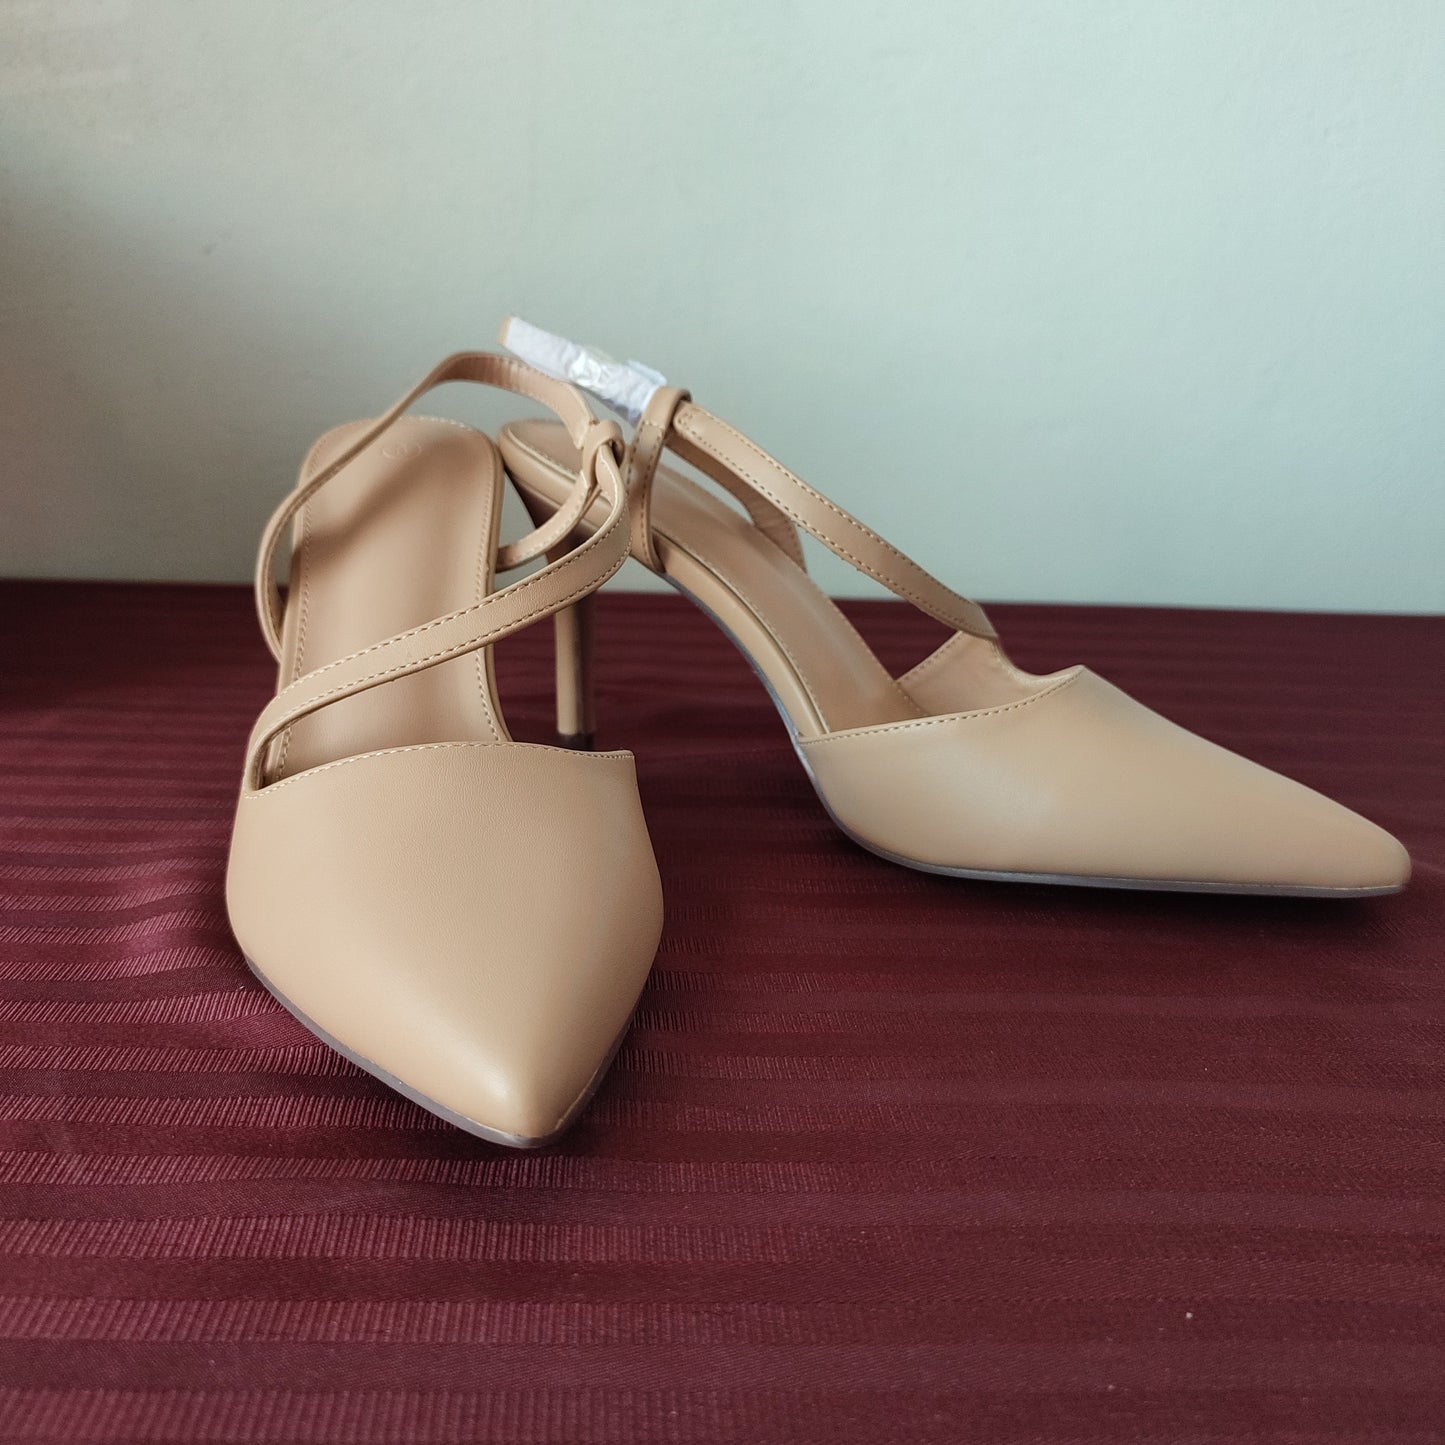 Zapatillas color beige talla 8 US (25 cm) - (Nuevo)